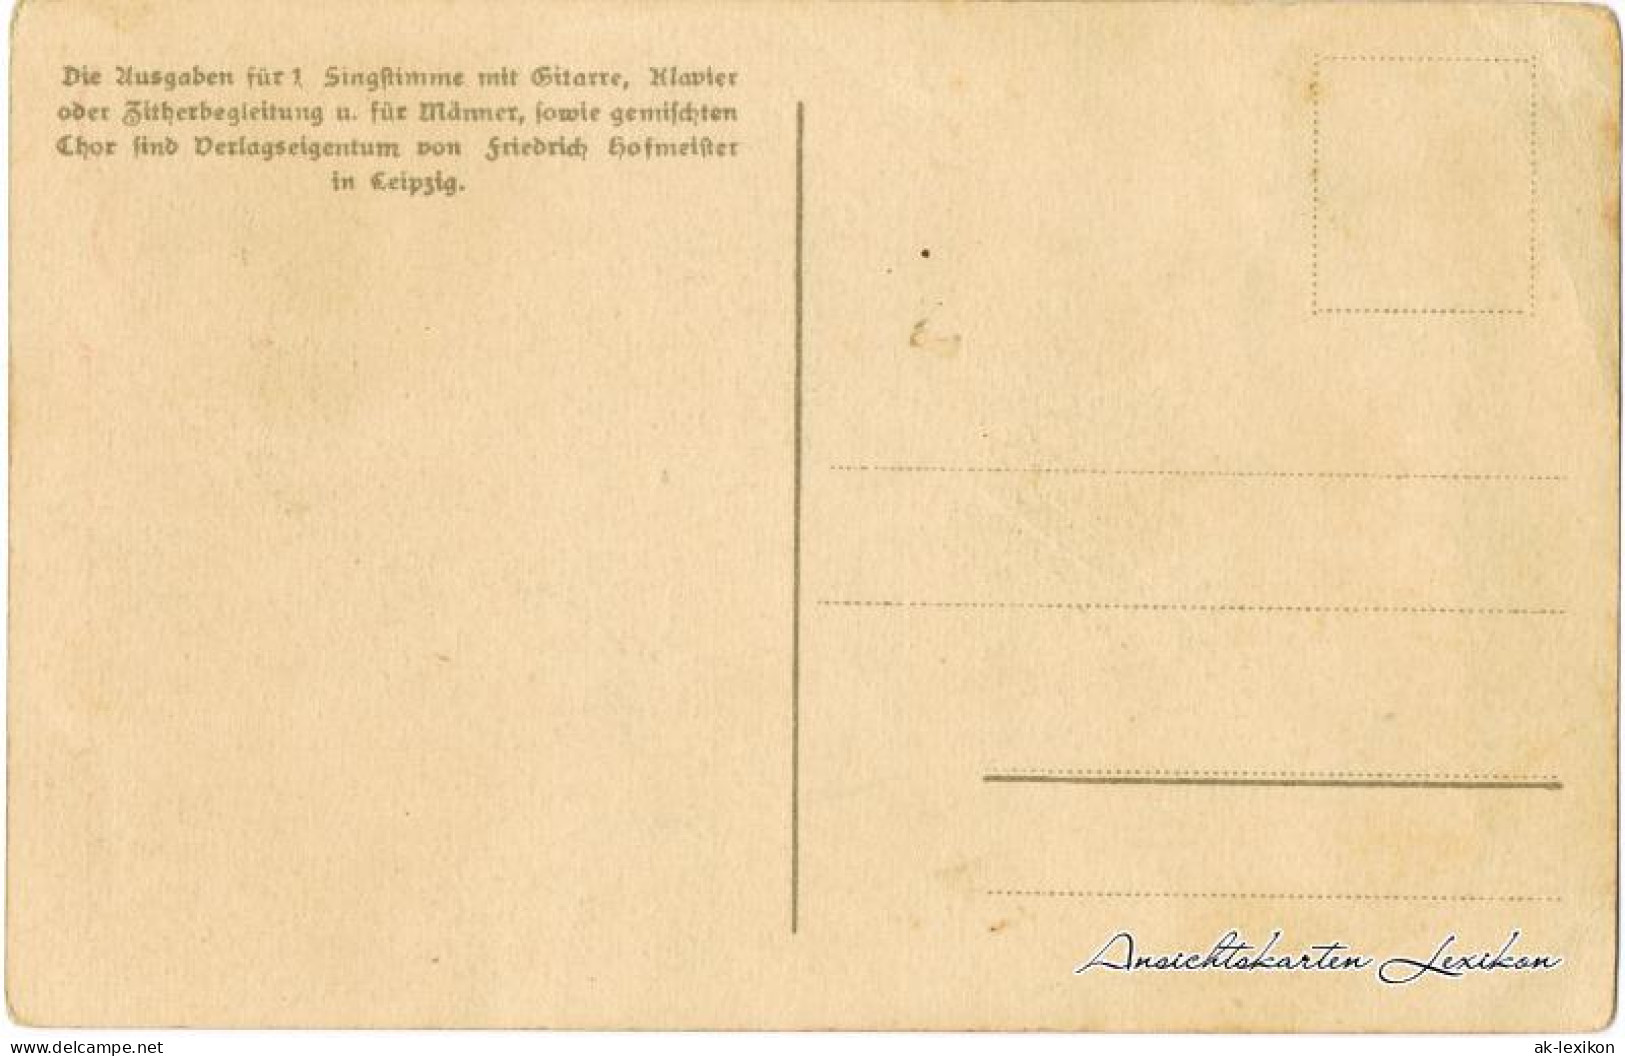  Liedkarte - Vergass Dei Hamit Net! 1906 Erzgebirge, Anton Günther Gottesgab:47  - Music